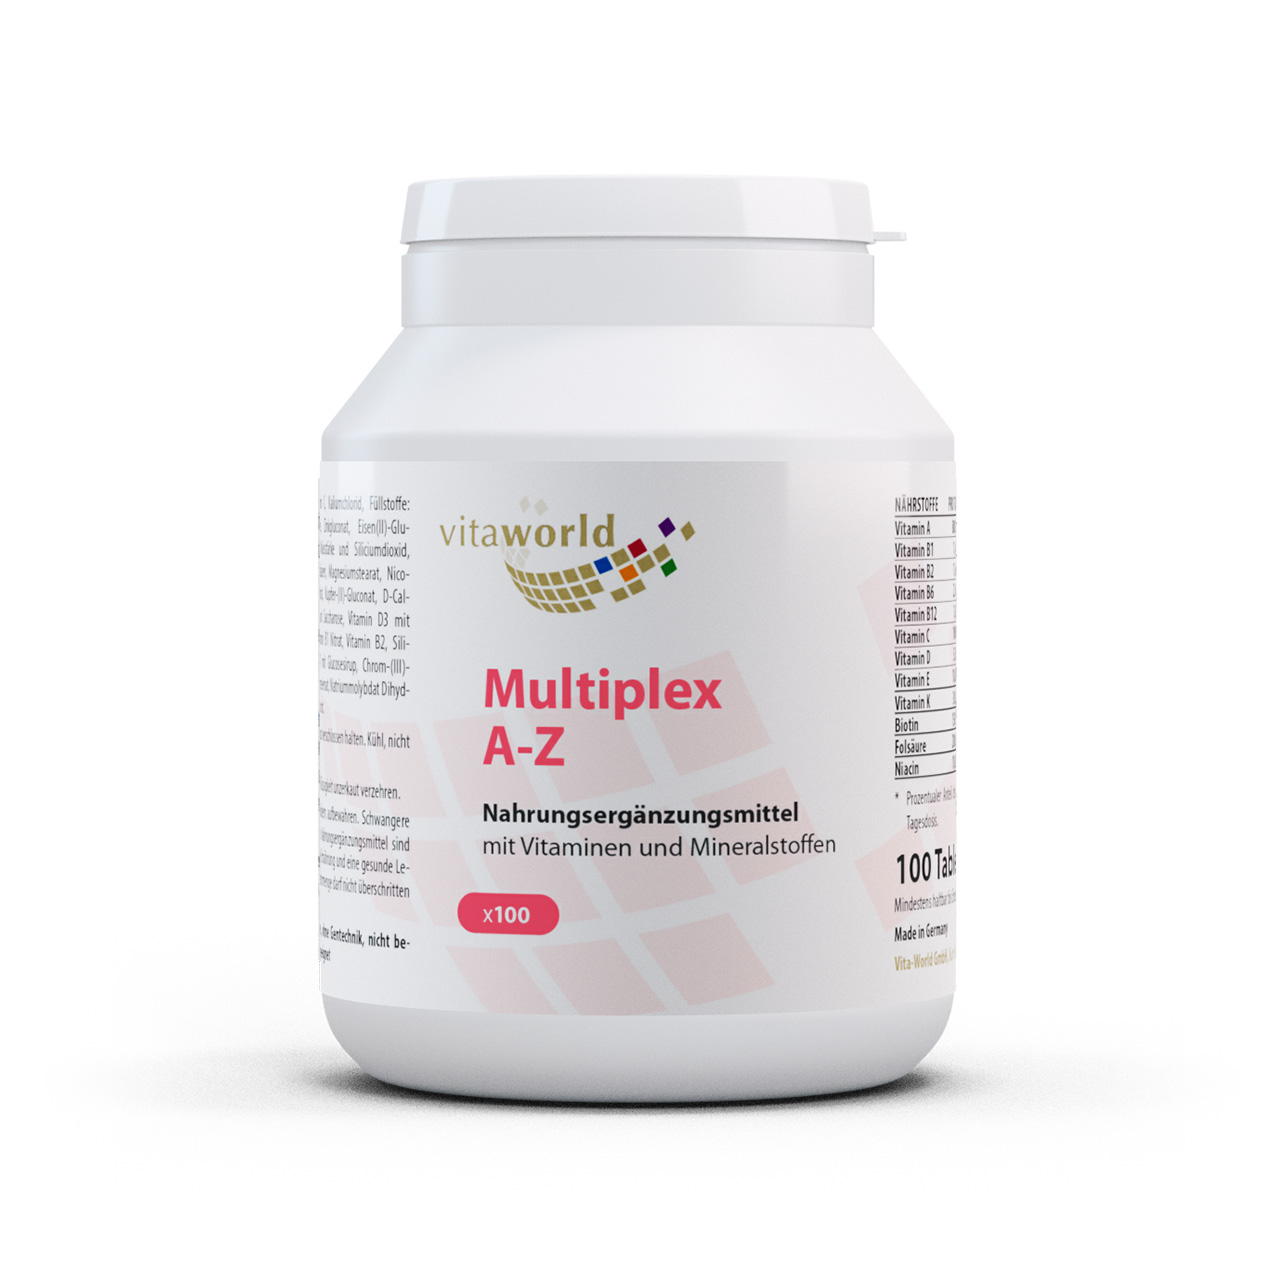 Vitaworld Multiplex A-Z Multivitamin | 100 Tabletten | mit 24 Wirkstoffen